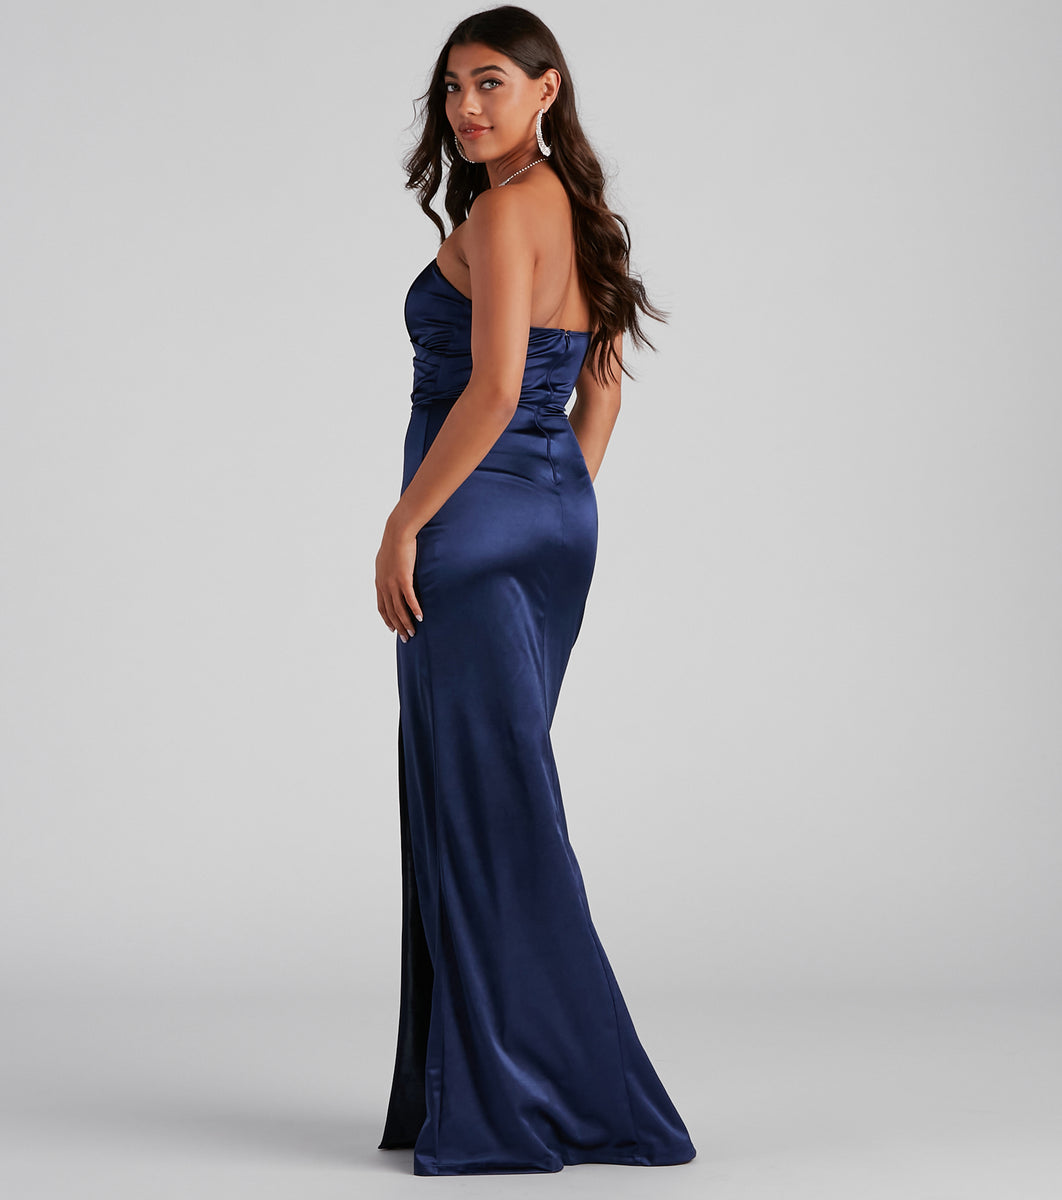 Gianna Strapless High-Slit Satin Dress & Windsor